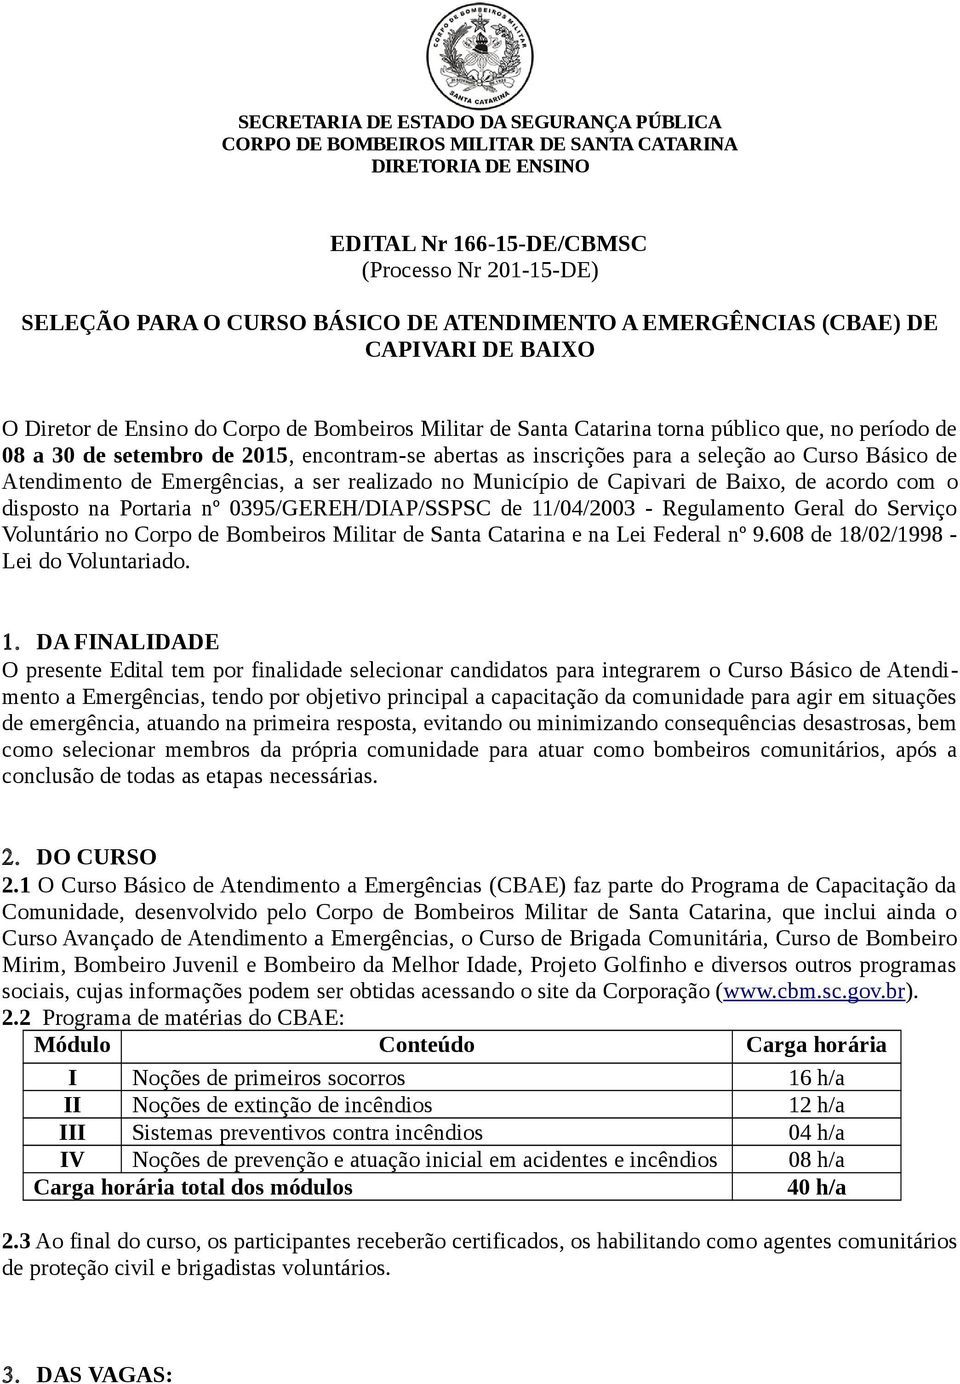 inscrições para a seleção ao Curso Básico de Atendimento de Emergências, a ser realizado no Município de Capivari de Baixo, de acordo com o disposto na Portaria nº 0395/GEREH/DIAP/SSPSC de 11/04/2003